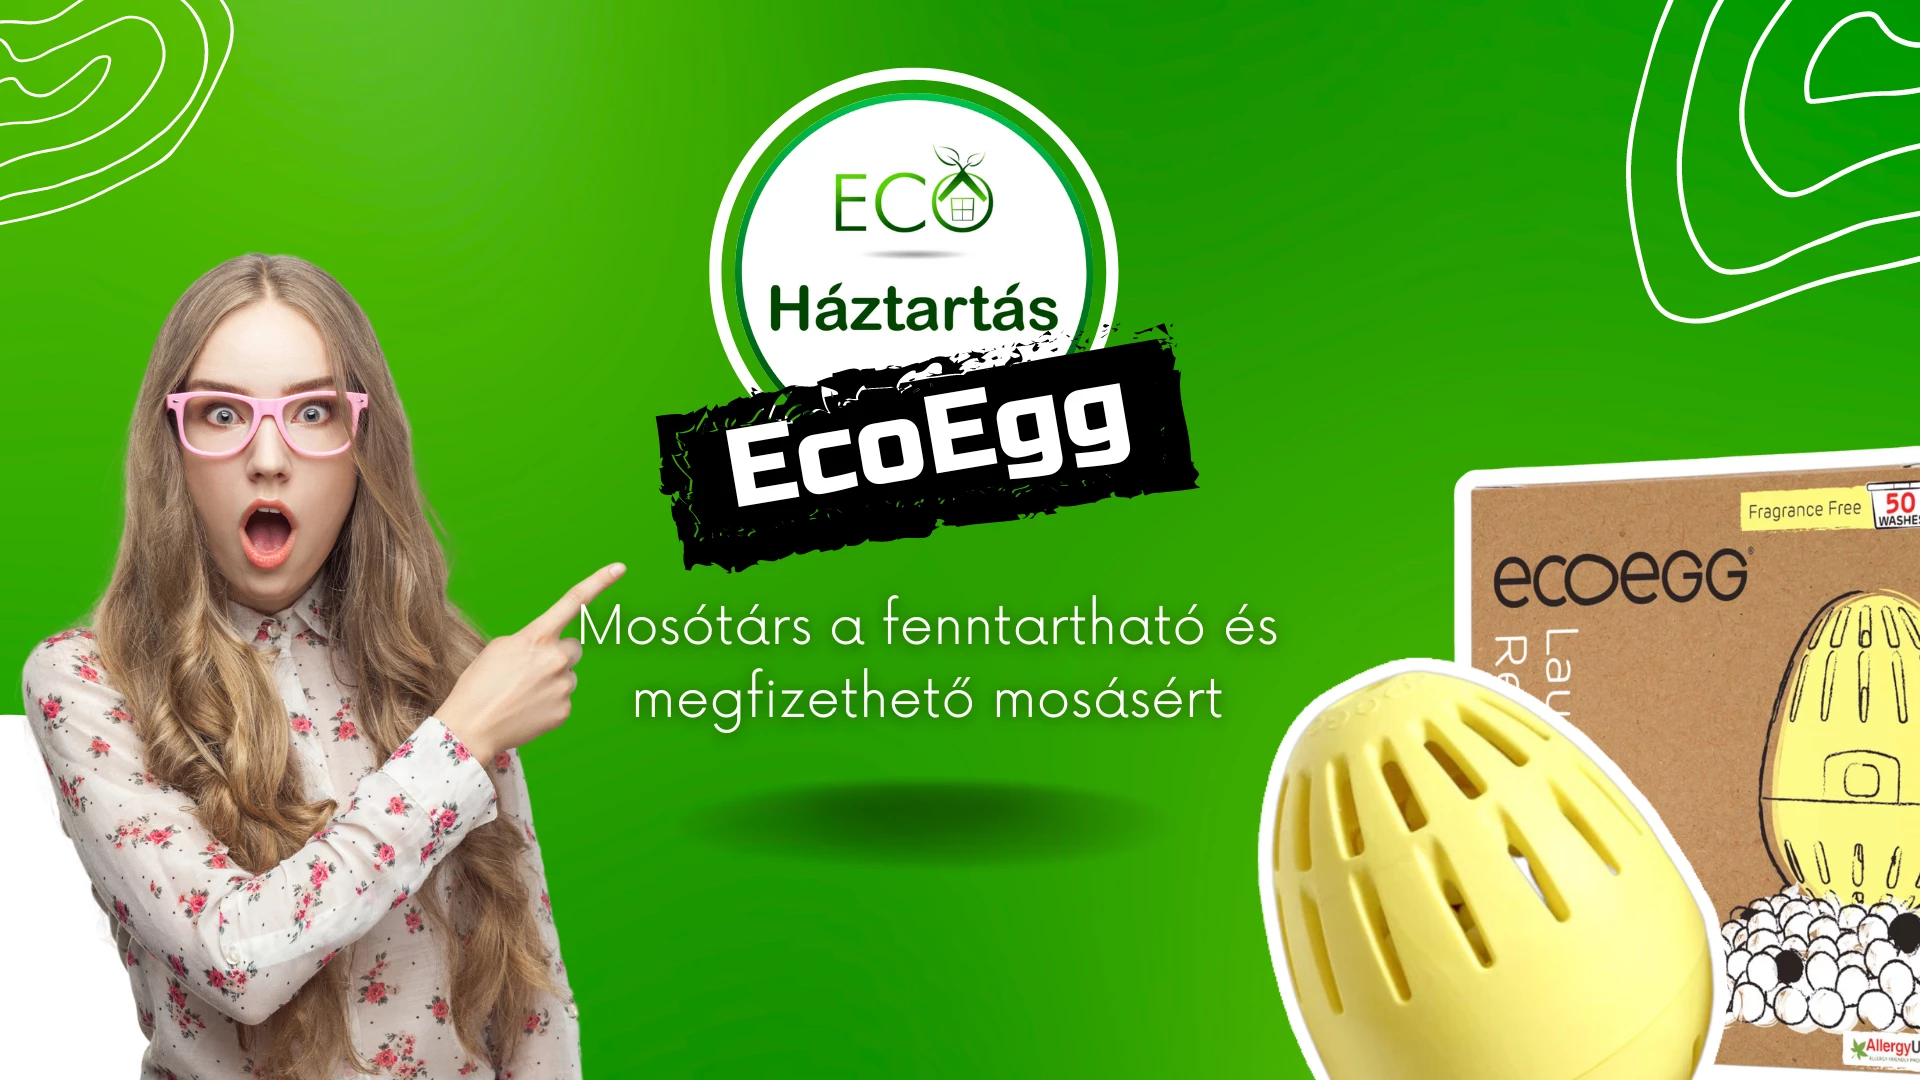 Ecoegg: A végső mosótárs a fenntartható és megfizethető mosásért